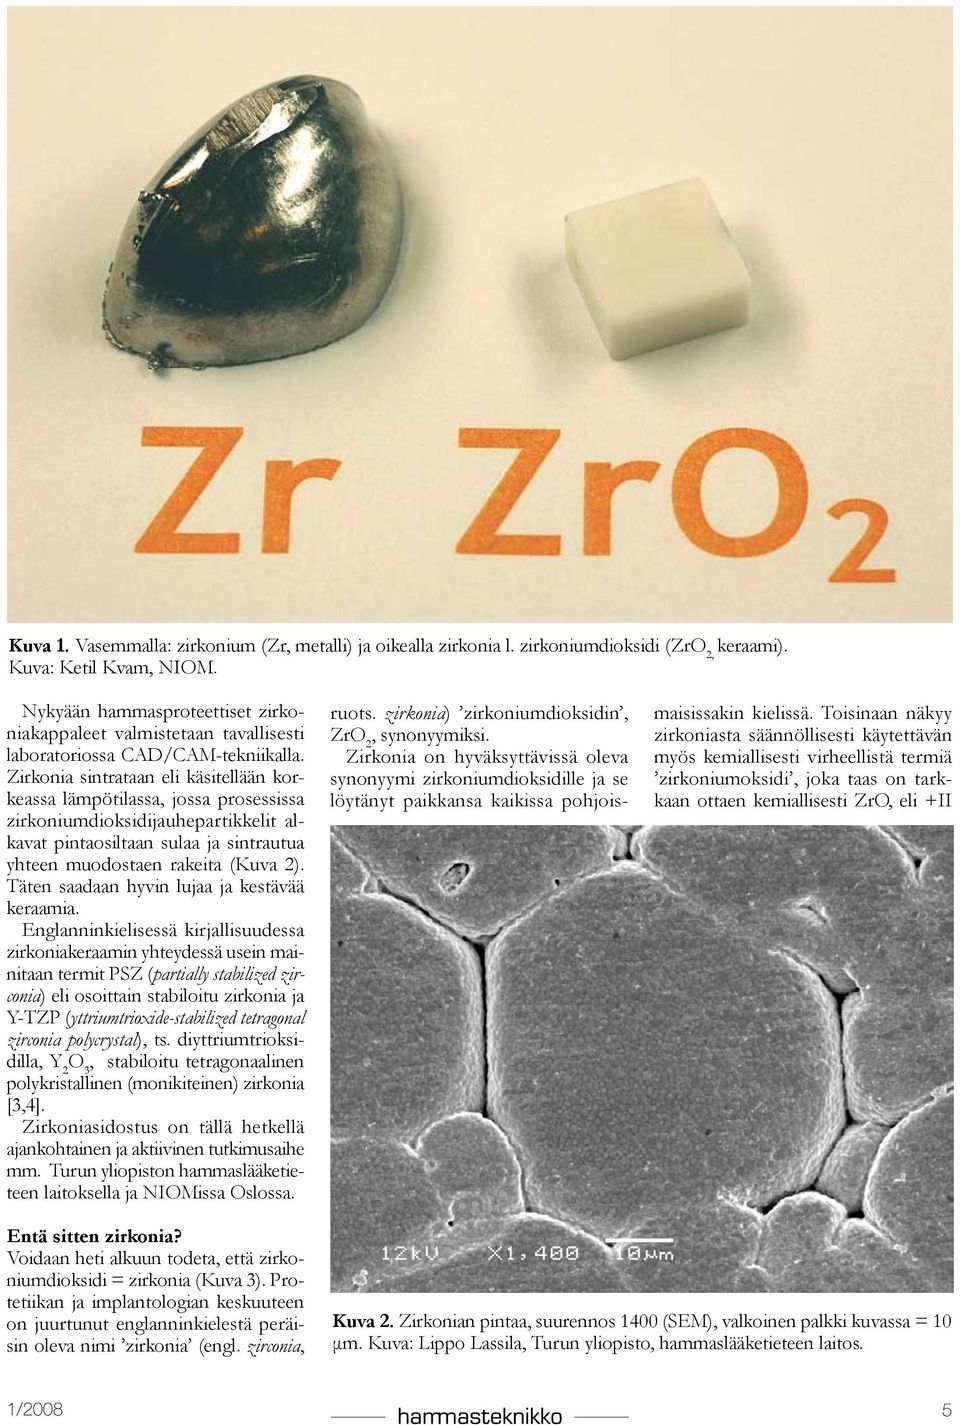 Zirkonia sintrataan eli käsitellään korkeassa lämpötilassa, jossa prosessissa zirkoniumdioksidijauhepartikkelit alkavat pintaosiltaan sulaa ja sintrautua yhteen muodostaen rakeita (Kuva 2).